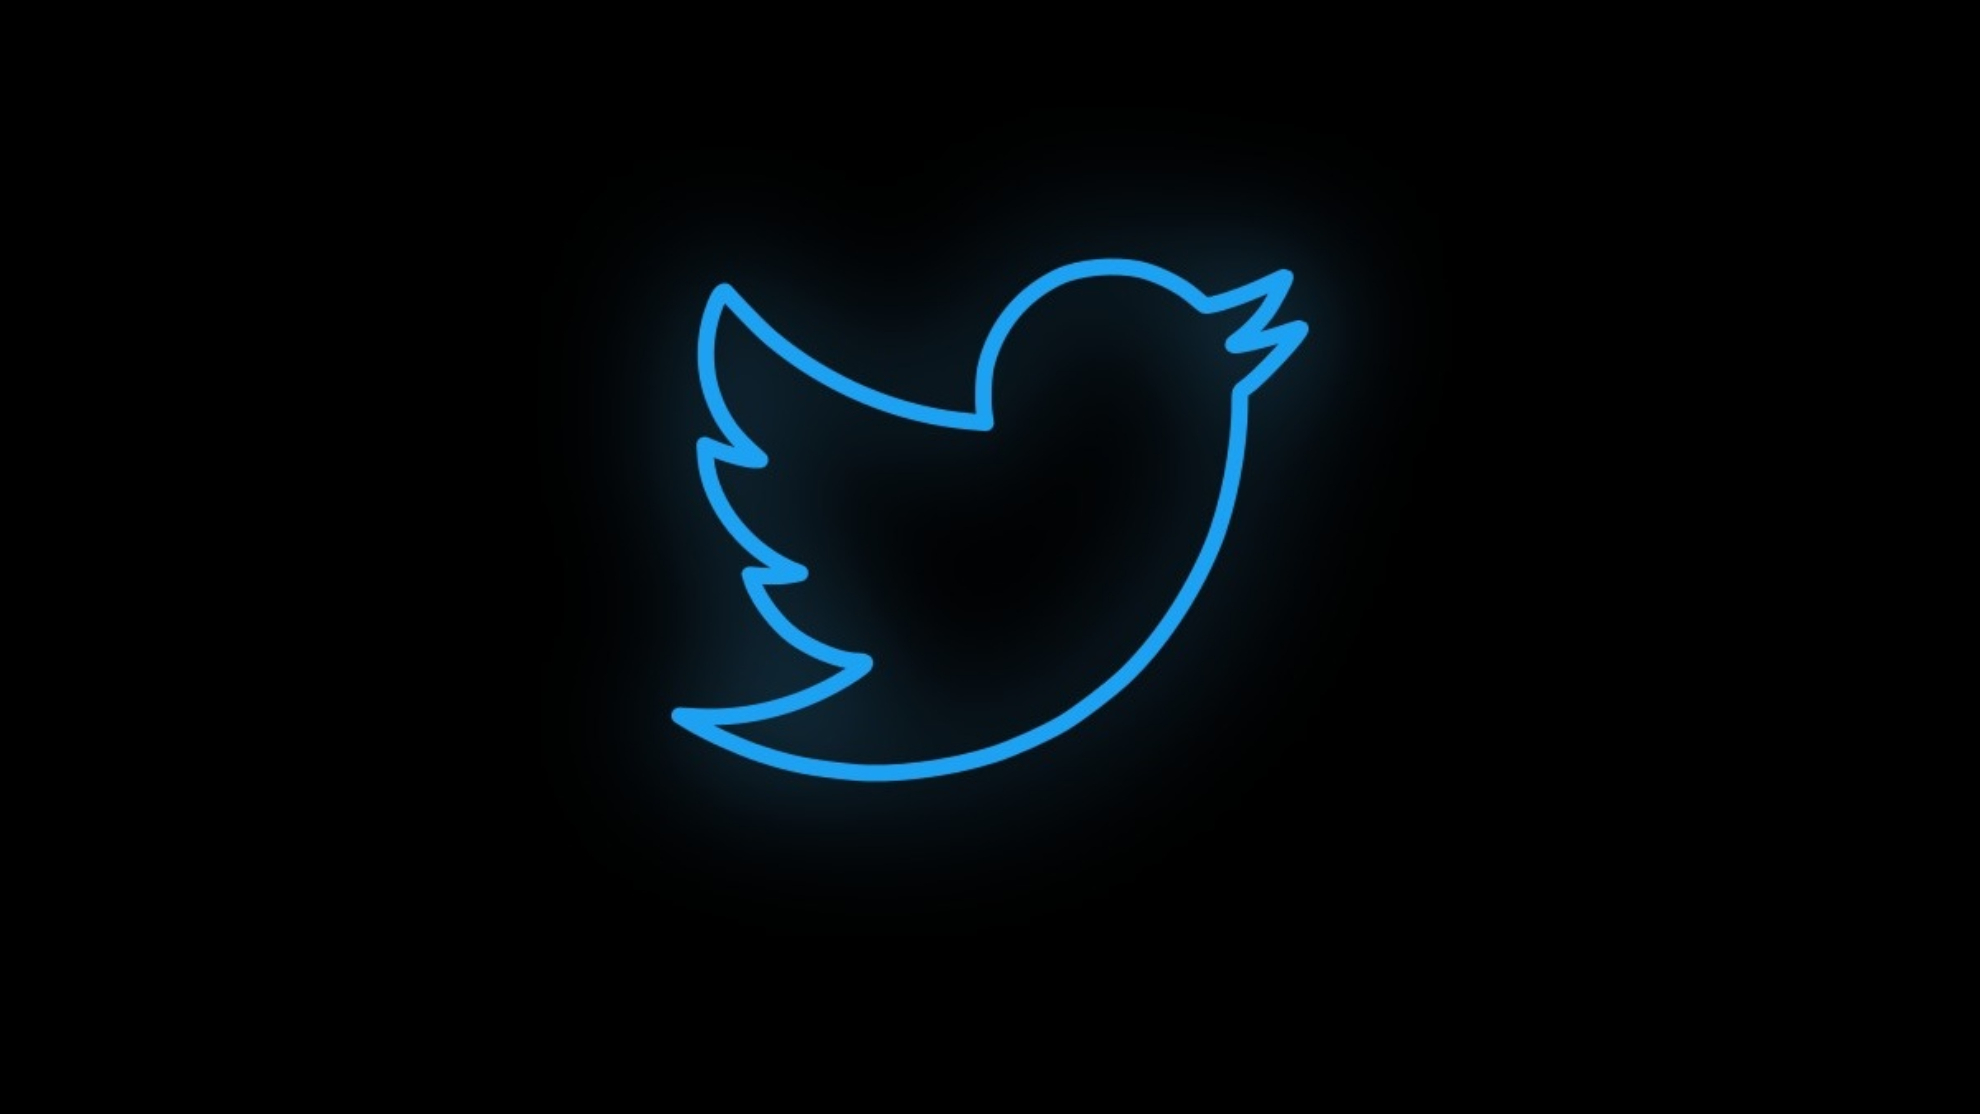 ¿Qué le pasó a Twitter y por qué se cayó? Esto es lo que sabemos